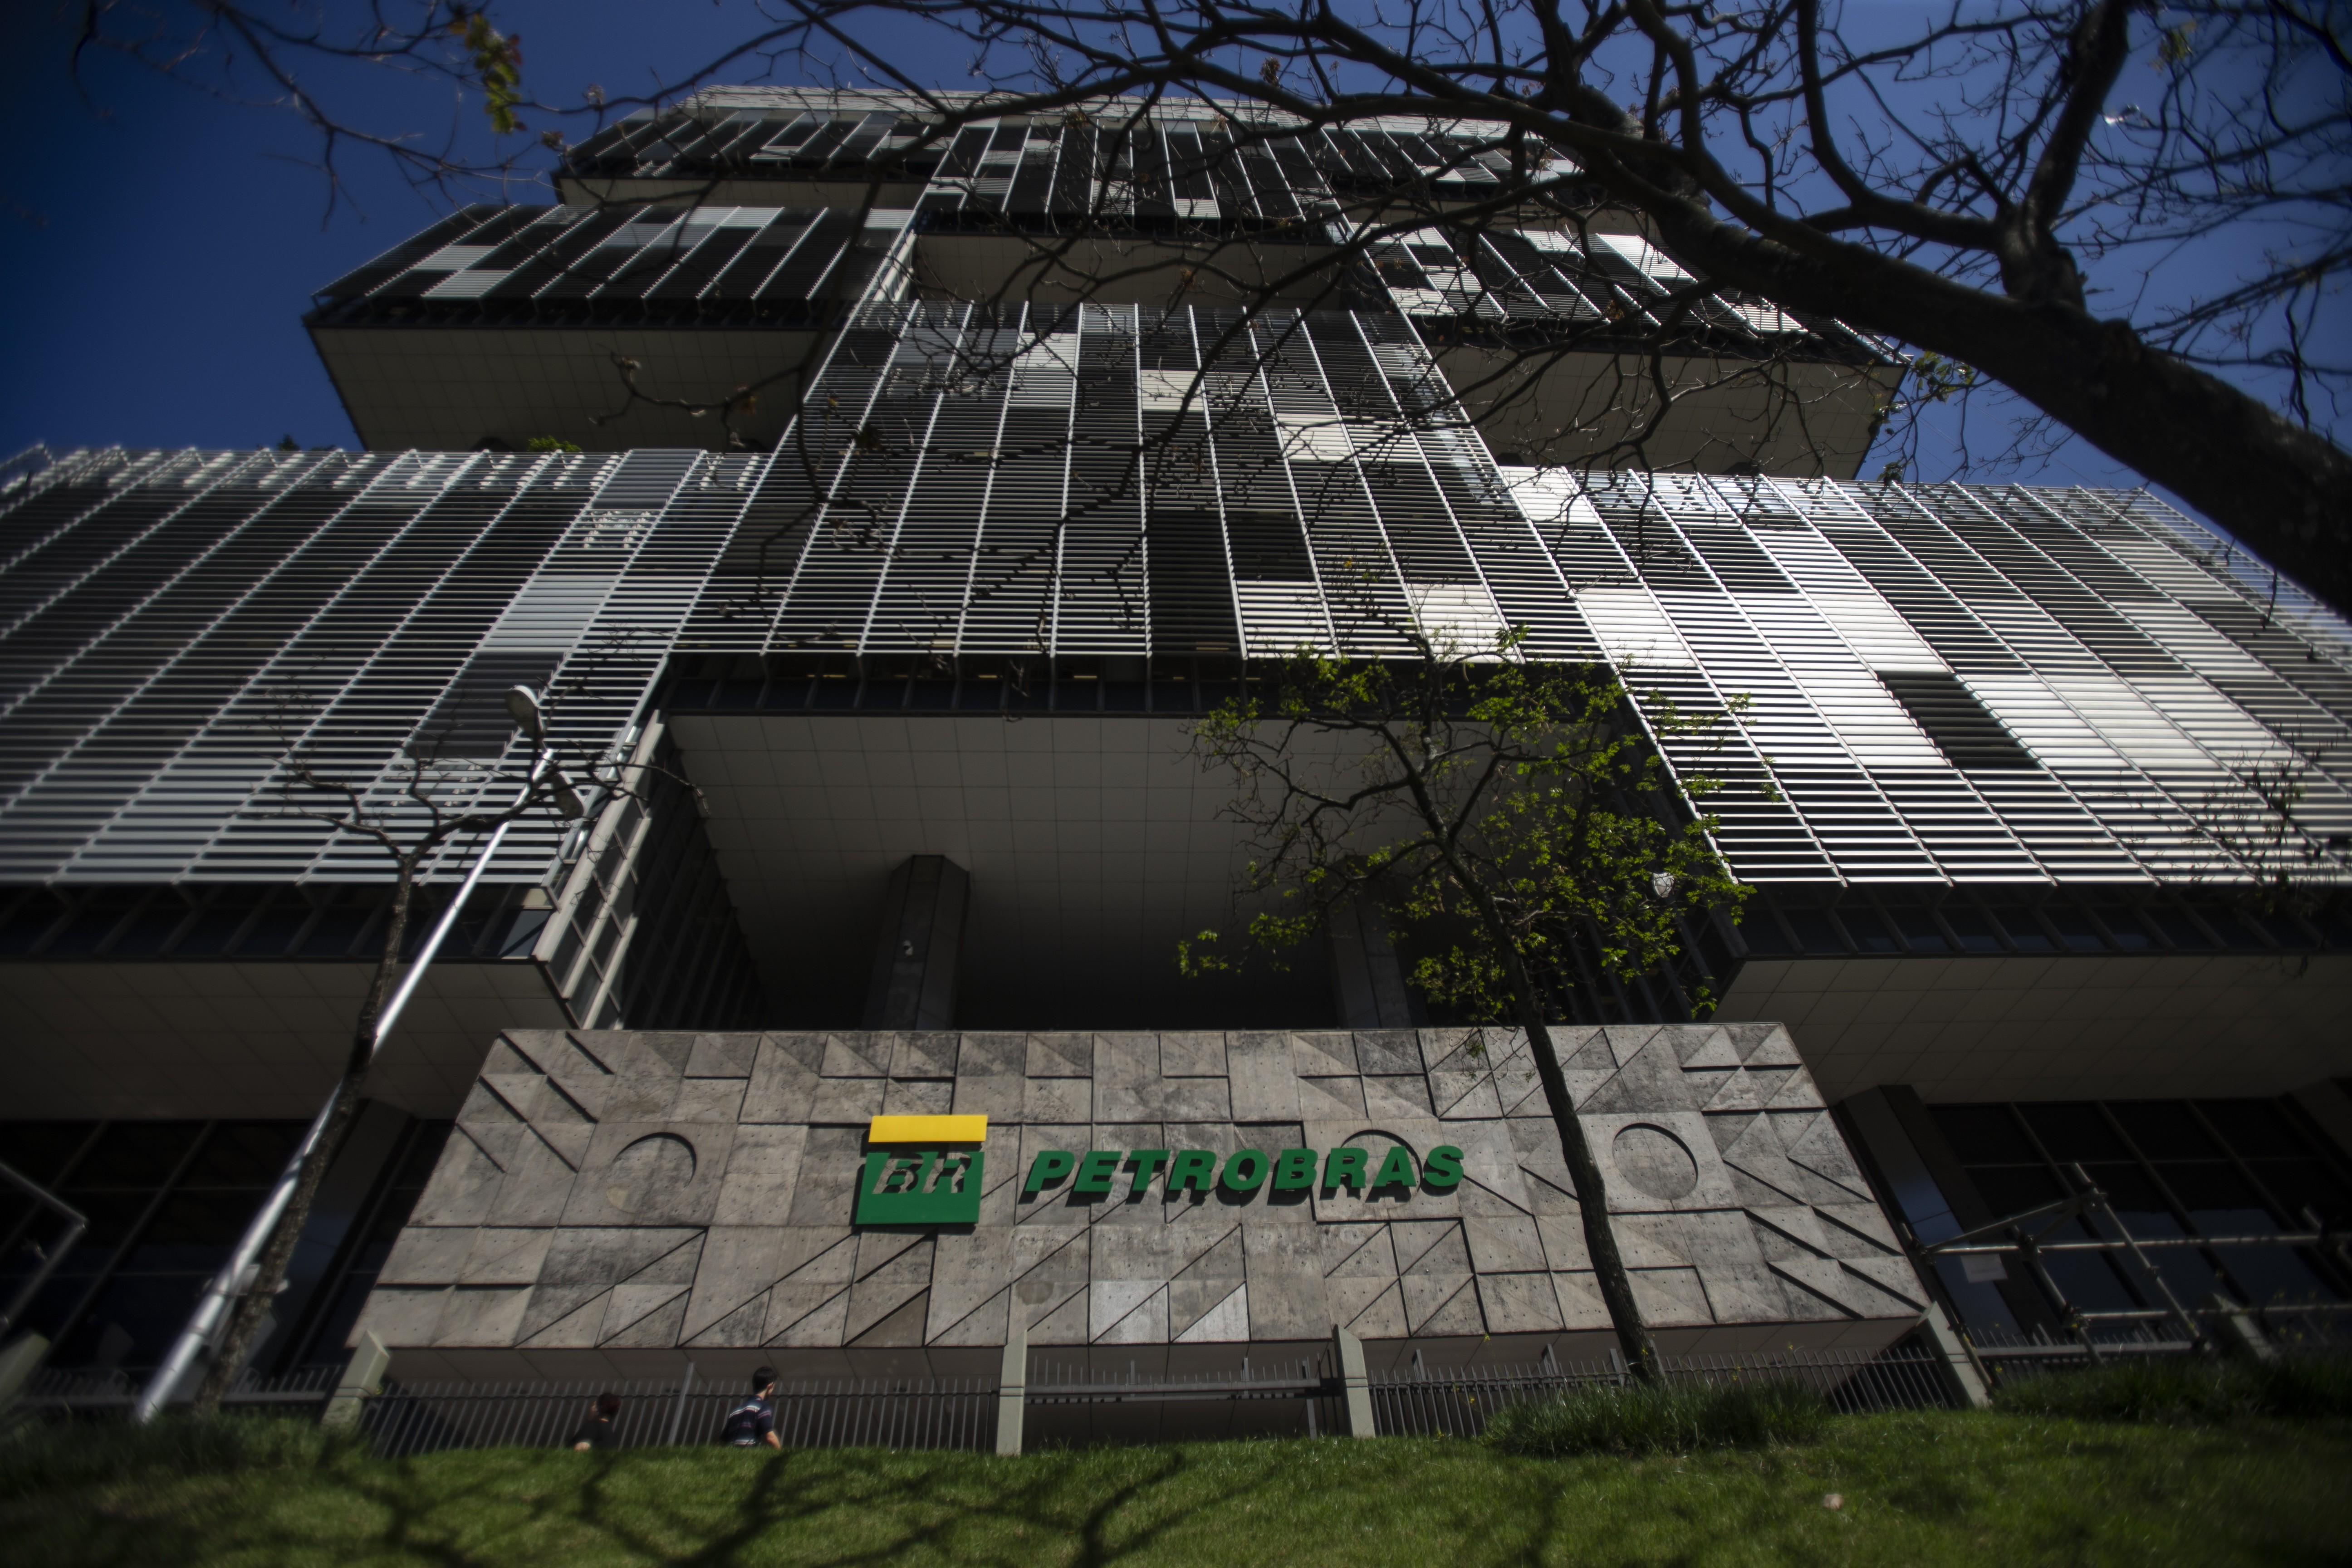 Sede da Petrobras, no Centro do Rio